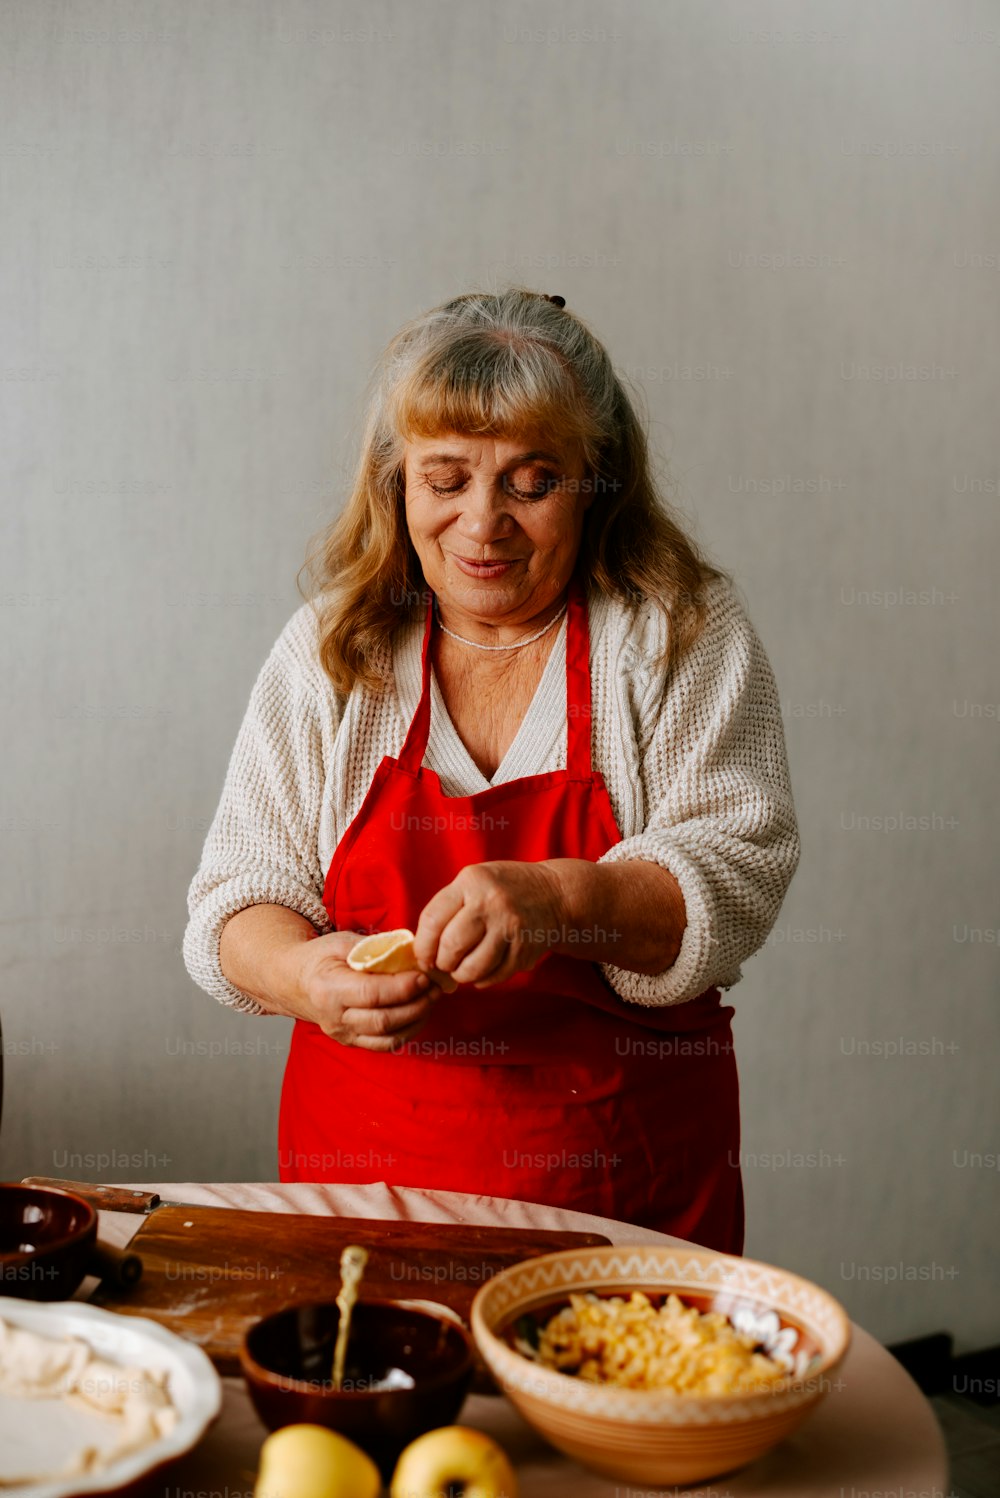 Una donna in un grembiule che prepara il cibo su un tavolo